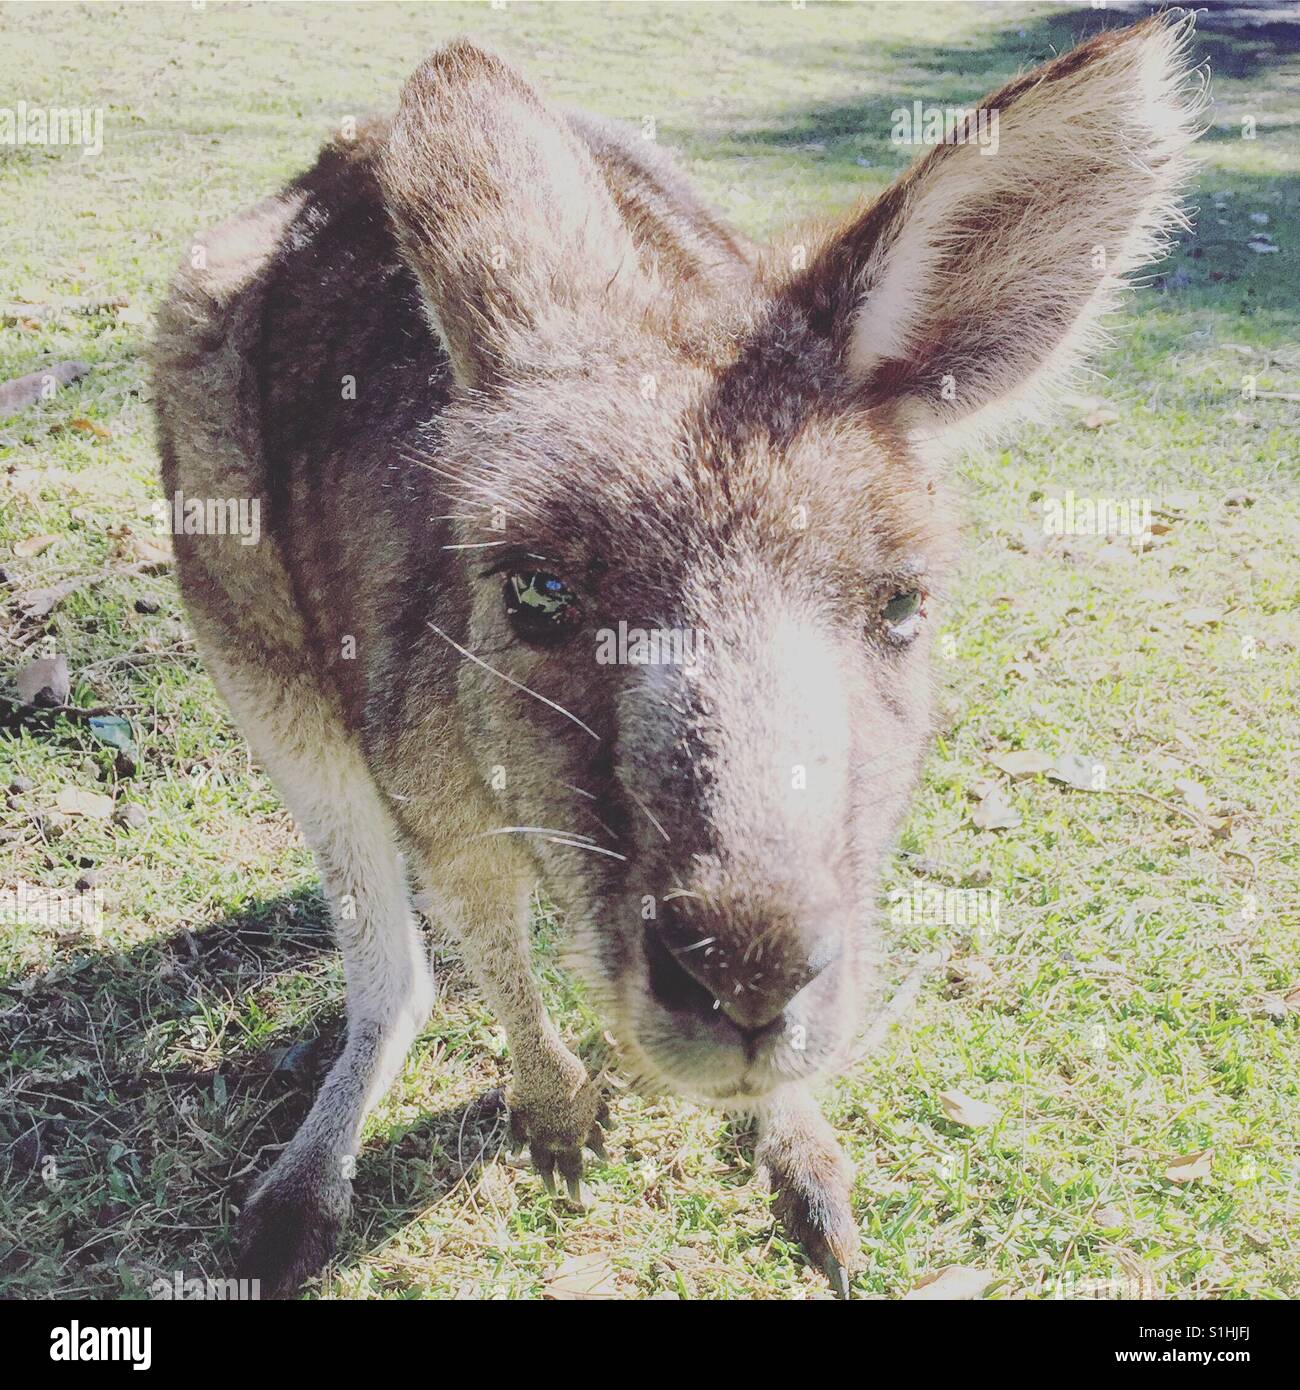 Curious kangaroo close up in outdoor Australia Stock Photo